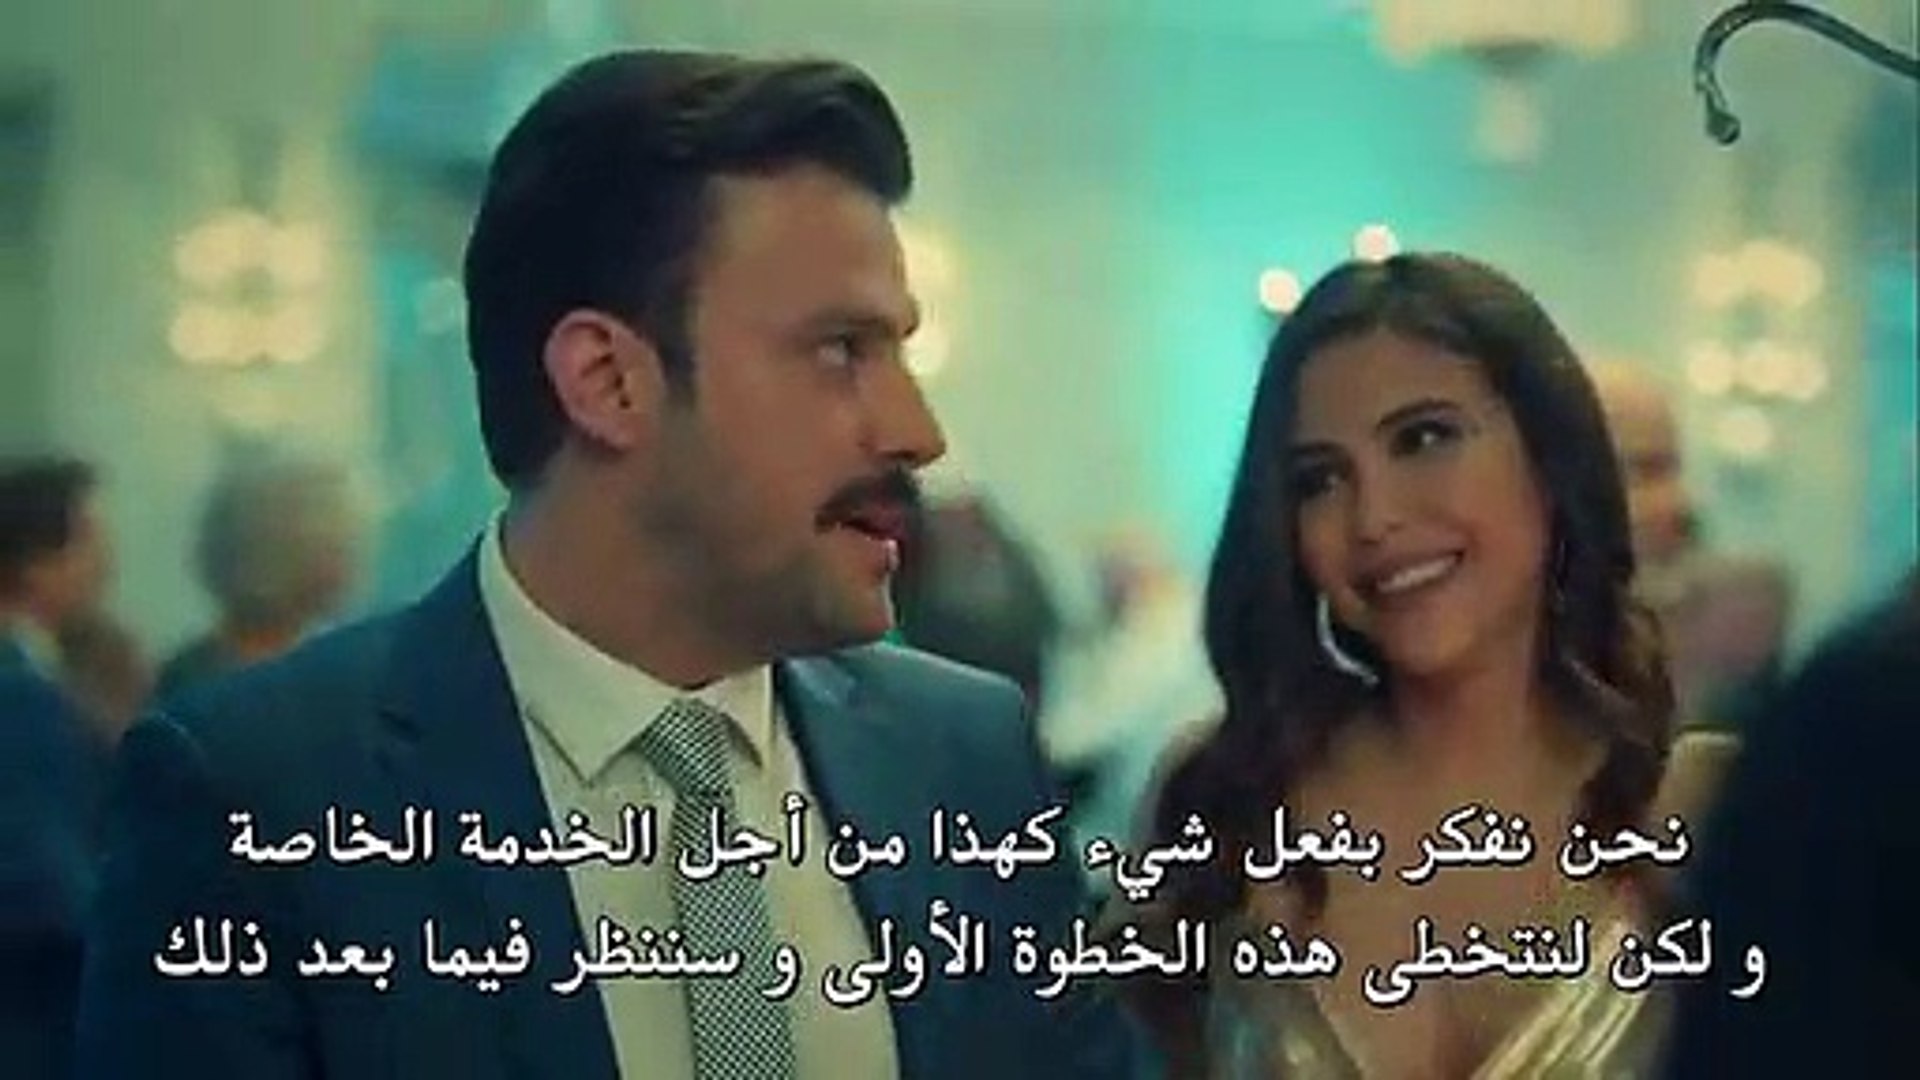 مسلسل عروس اسطنبول 2 الموسم الثاني مترجم للعربية الحلقة 33 القسم 1 فيديو Dailymotion